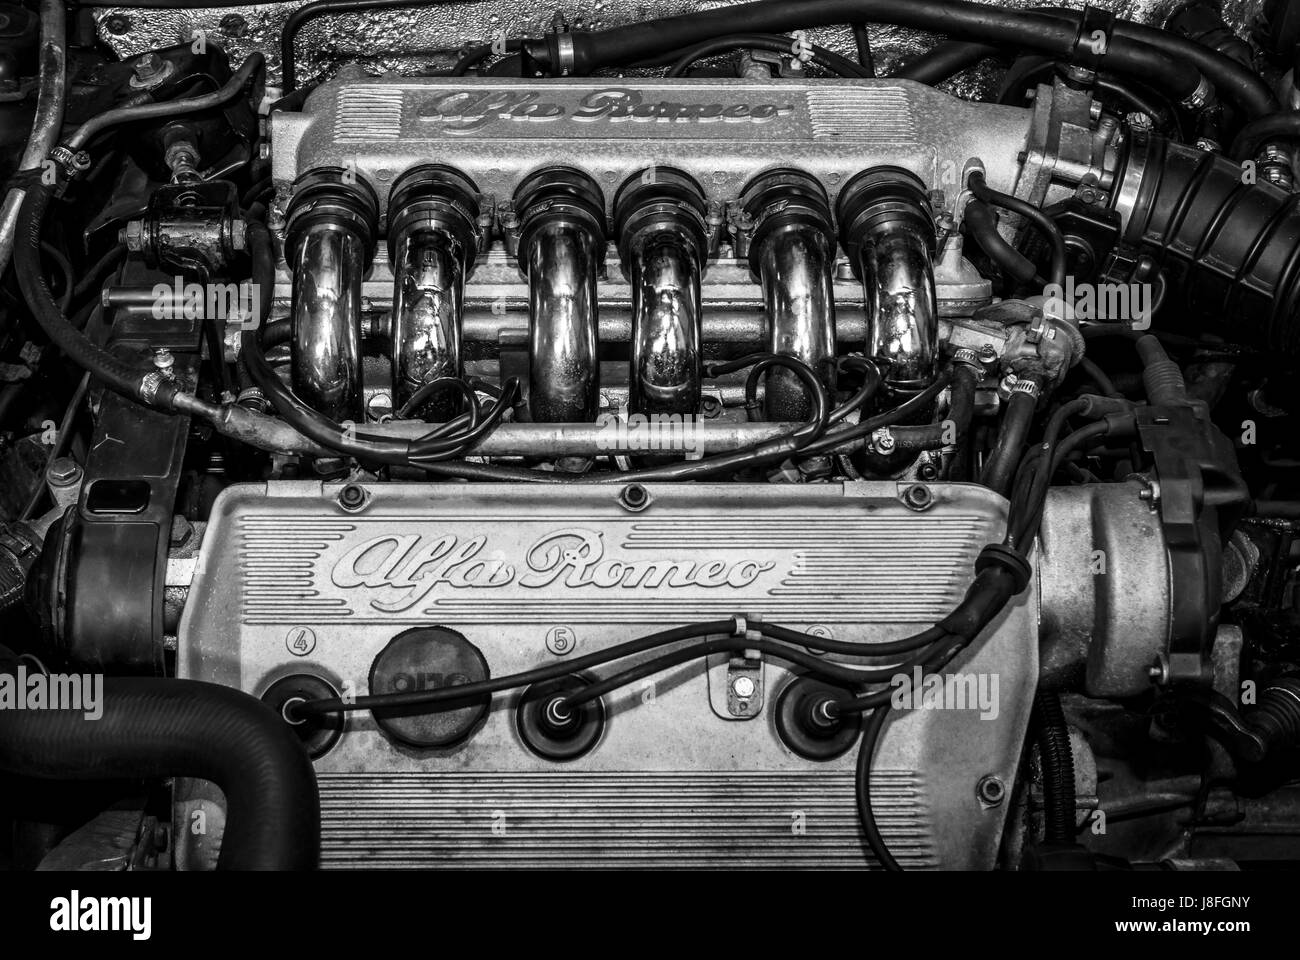 STUTTGART, ALLEMAGNE - Mars 04, 2017 : moteur de l'Alfa Romeo 164 (Type 164), V6, 3.0, 1992. Noir et blanc. Plus grand d'Europe Exposition de voitures classiques Banque D'Images